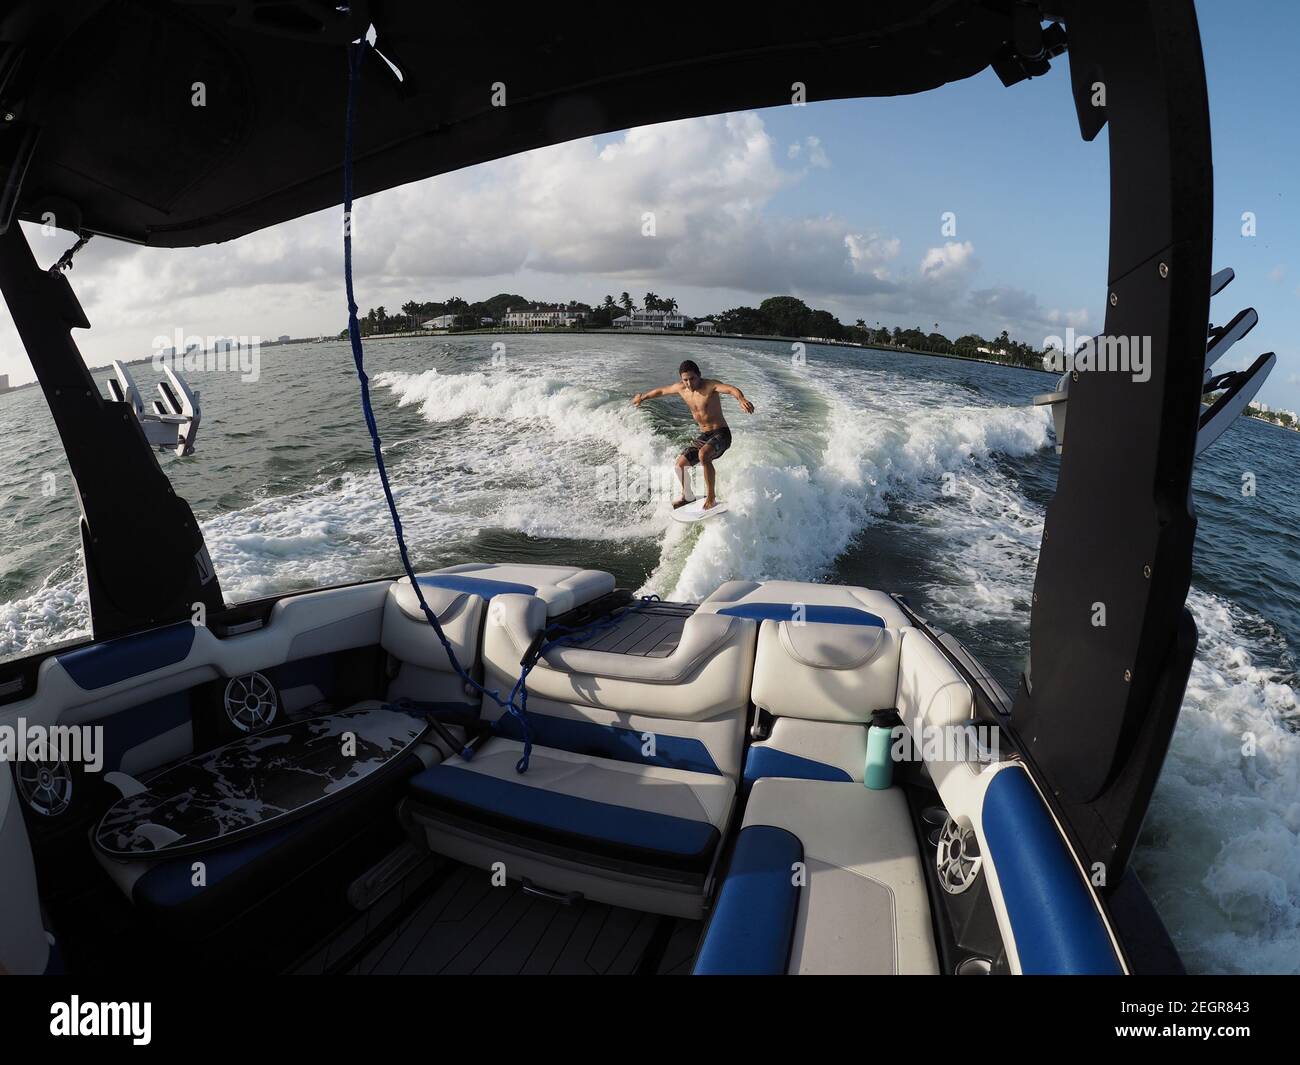 Surfer Transfer Wellenreiten hinter dem Boot, Innenraum des Bootes und Sitze im Vordergrund Stockfoto